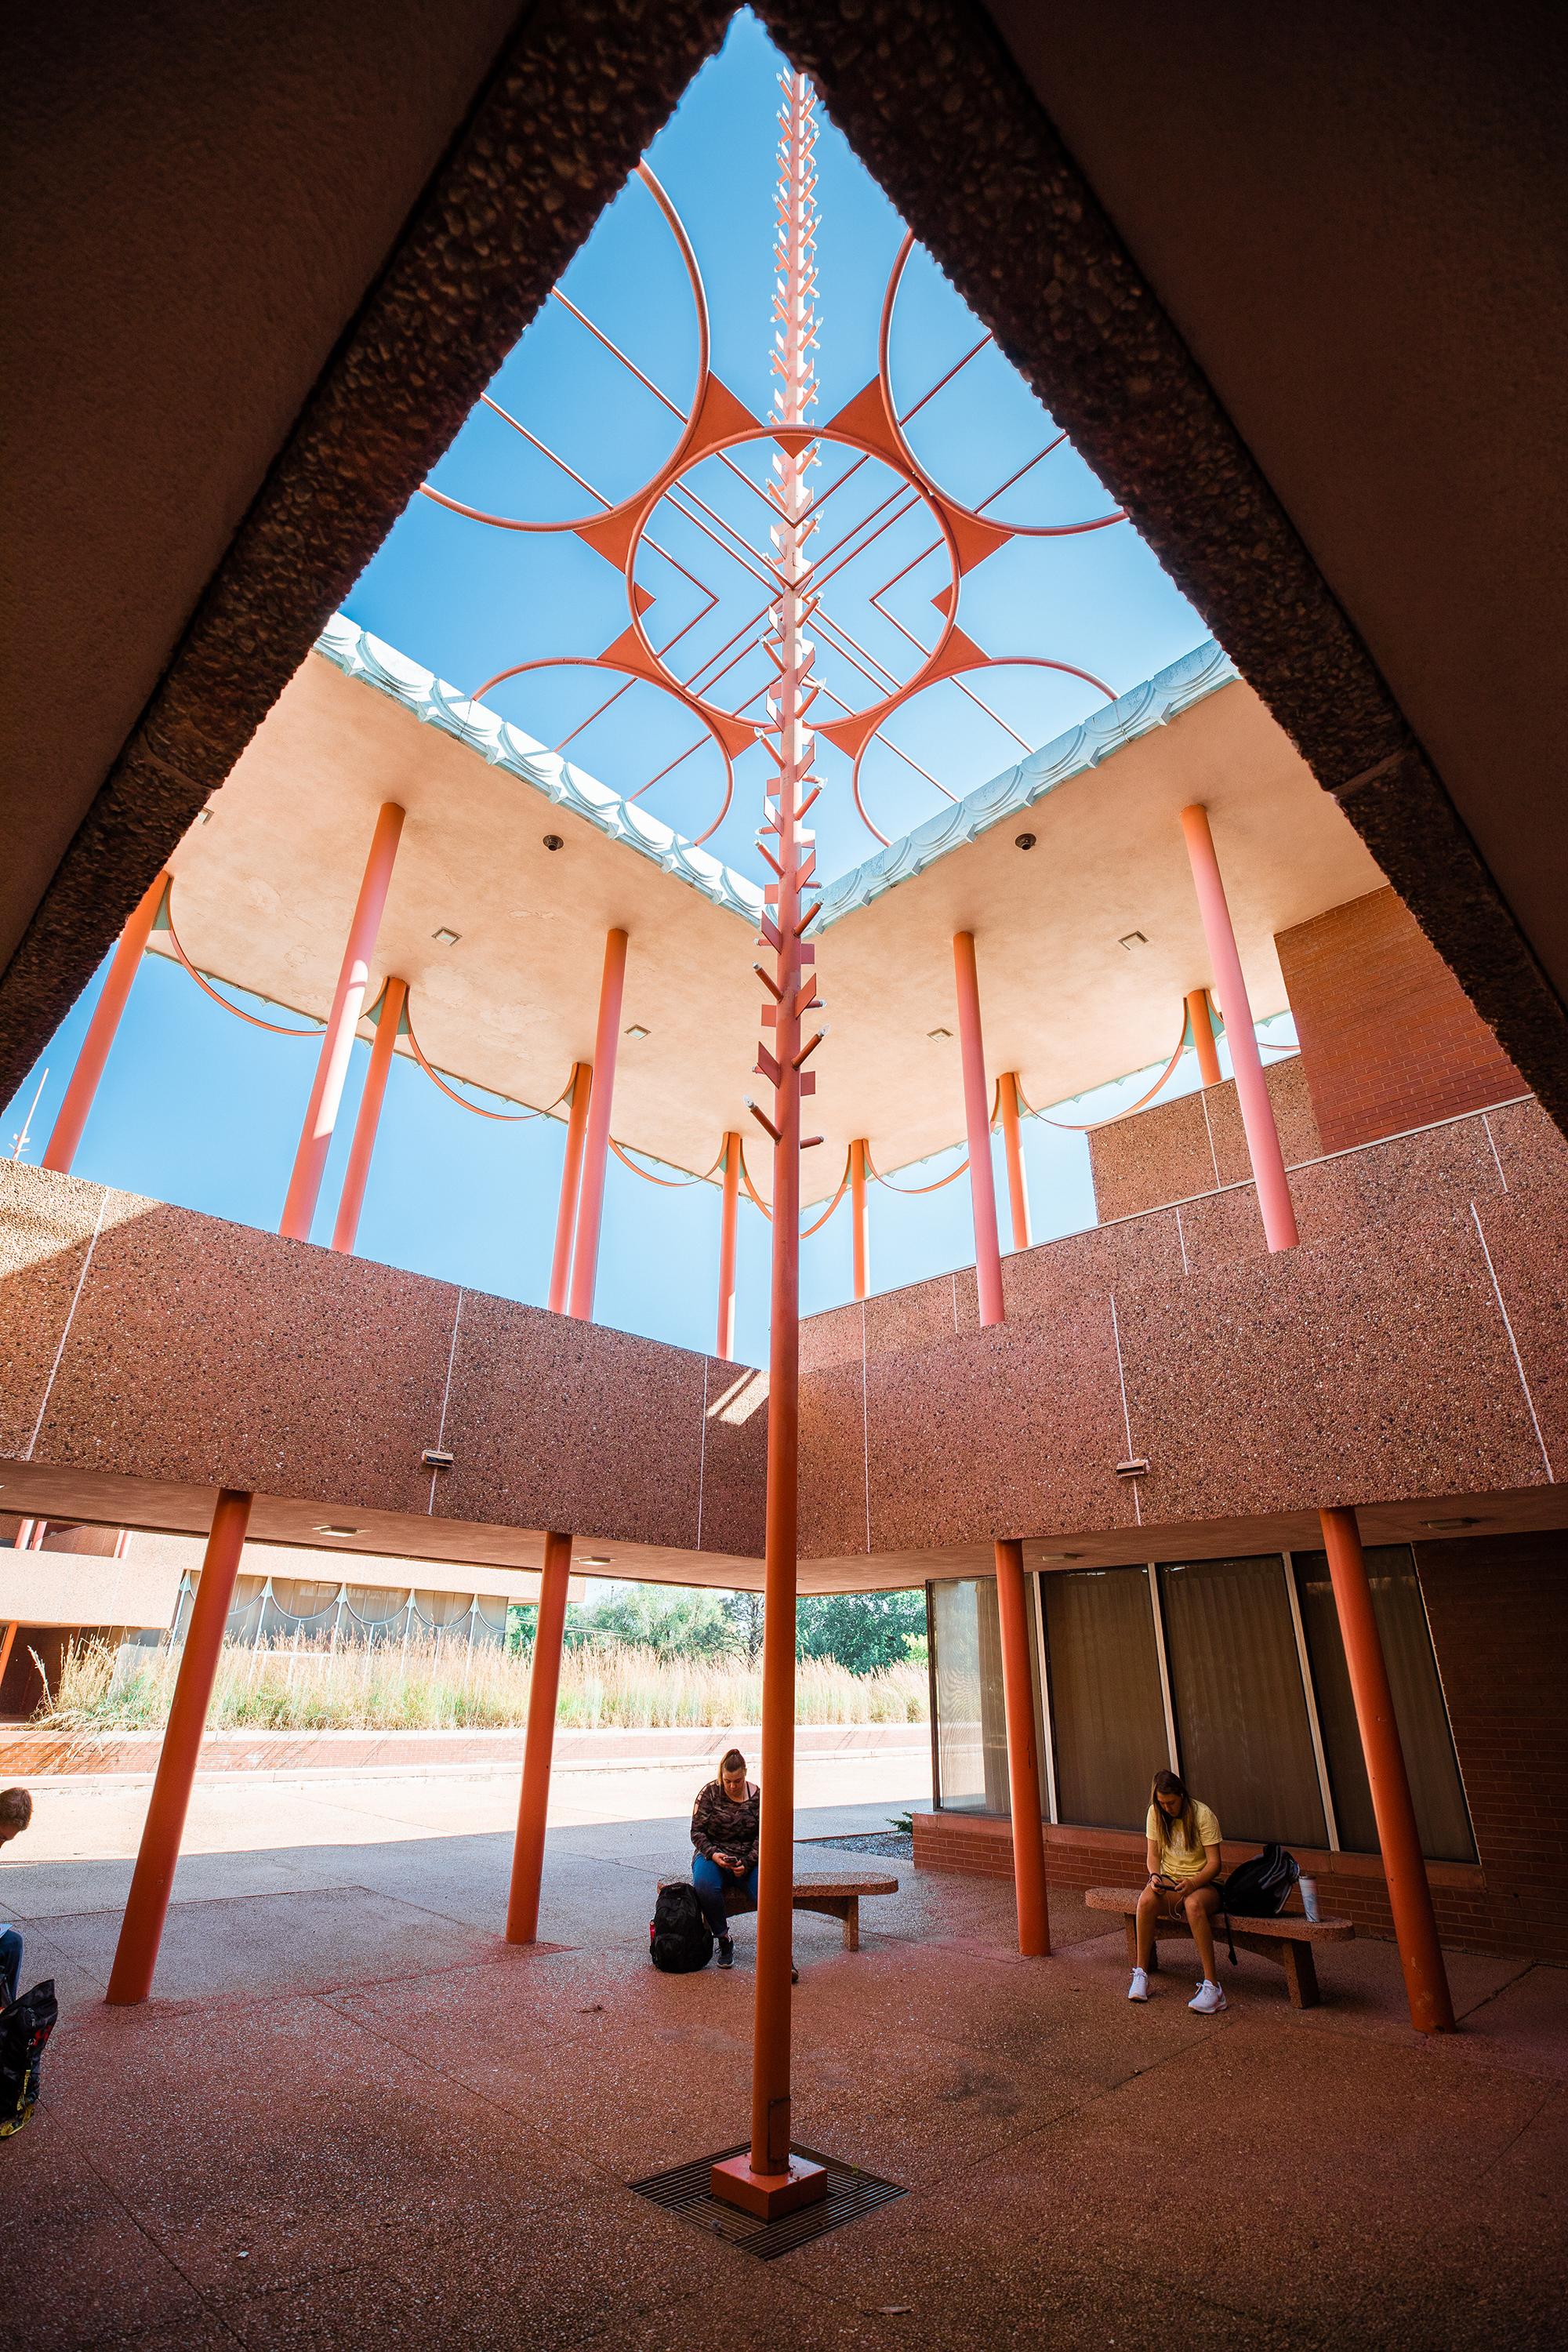 Upward angle of corbin education center